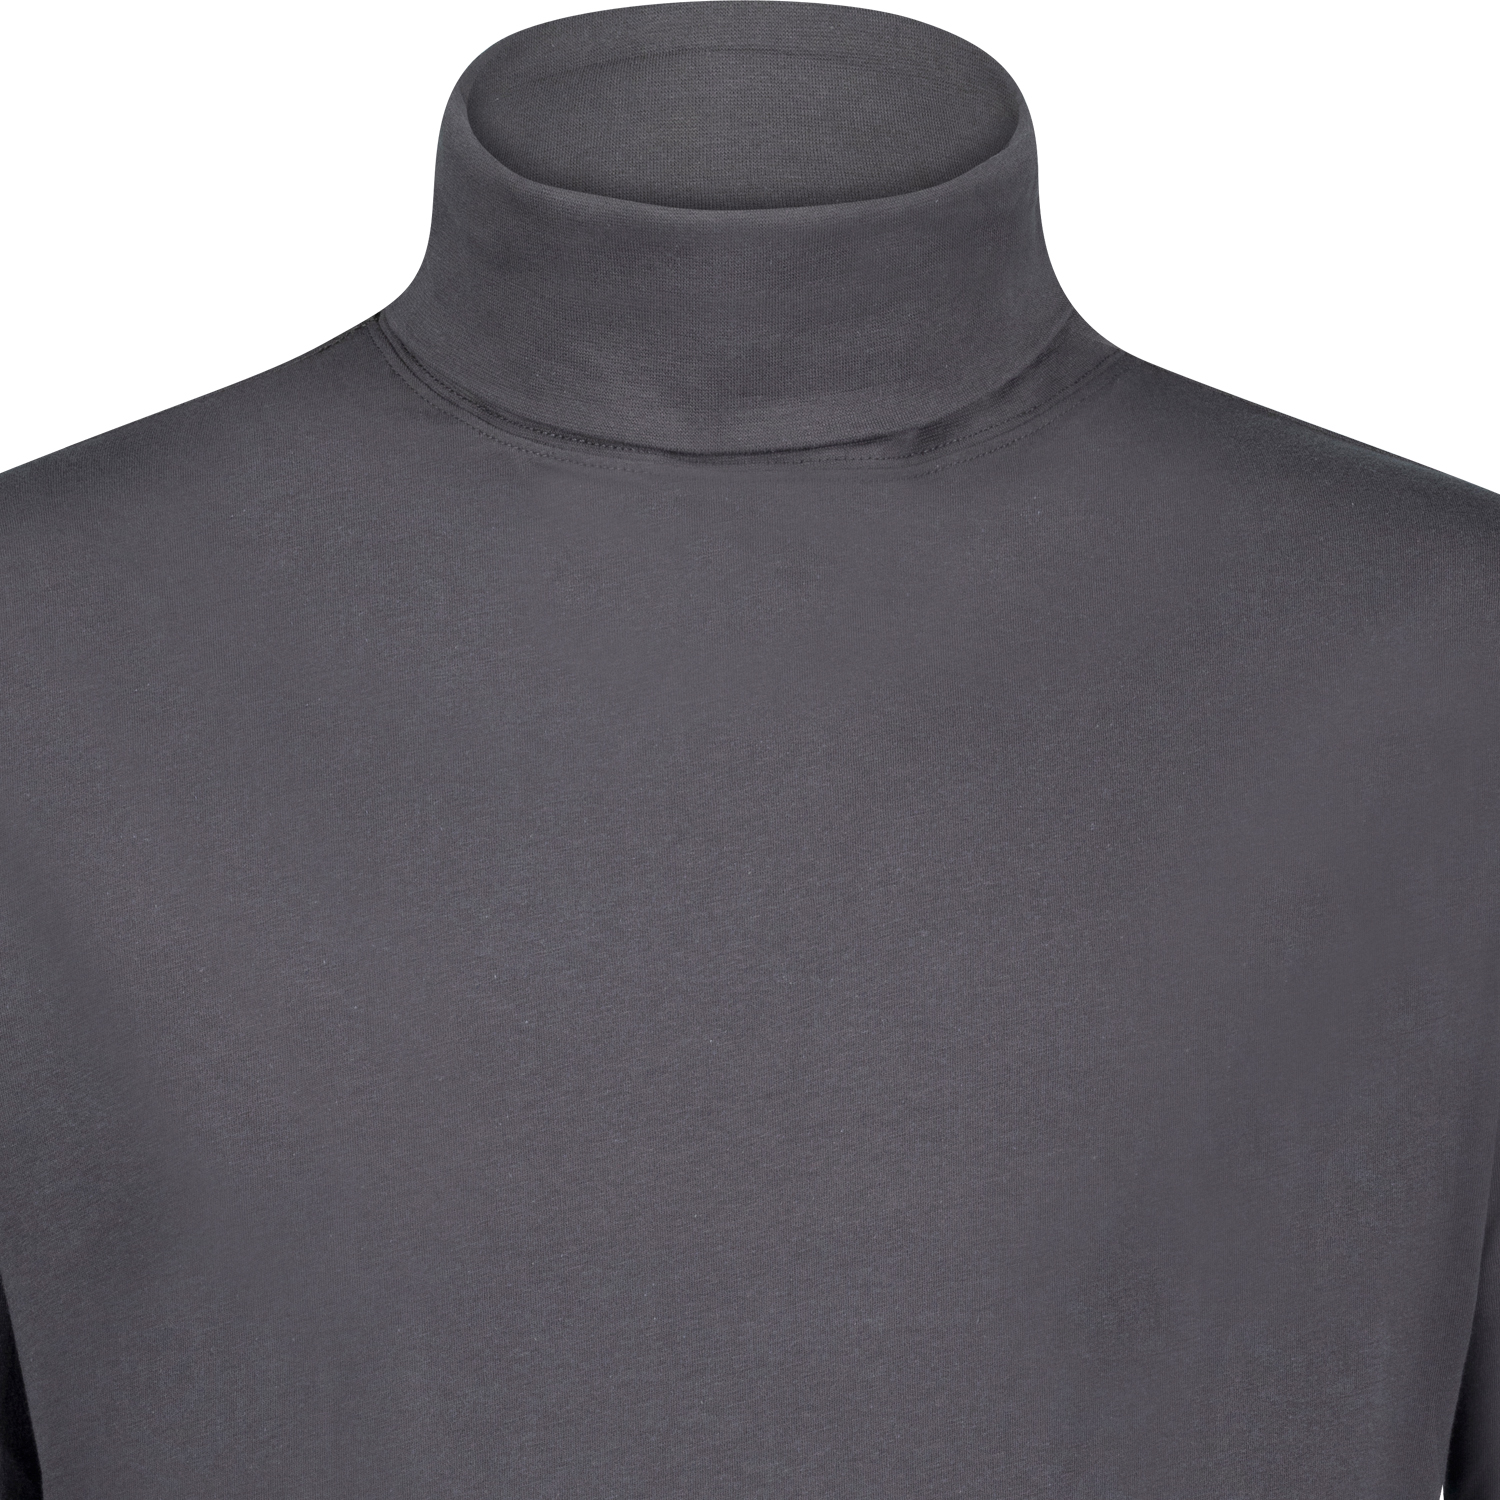 Rollkragen Shirt COMFORT FIT für Herren in anthrazit von ADAMO bis Übergröße 12XL